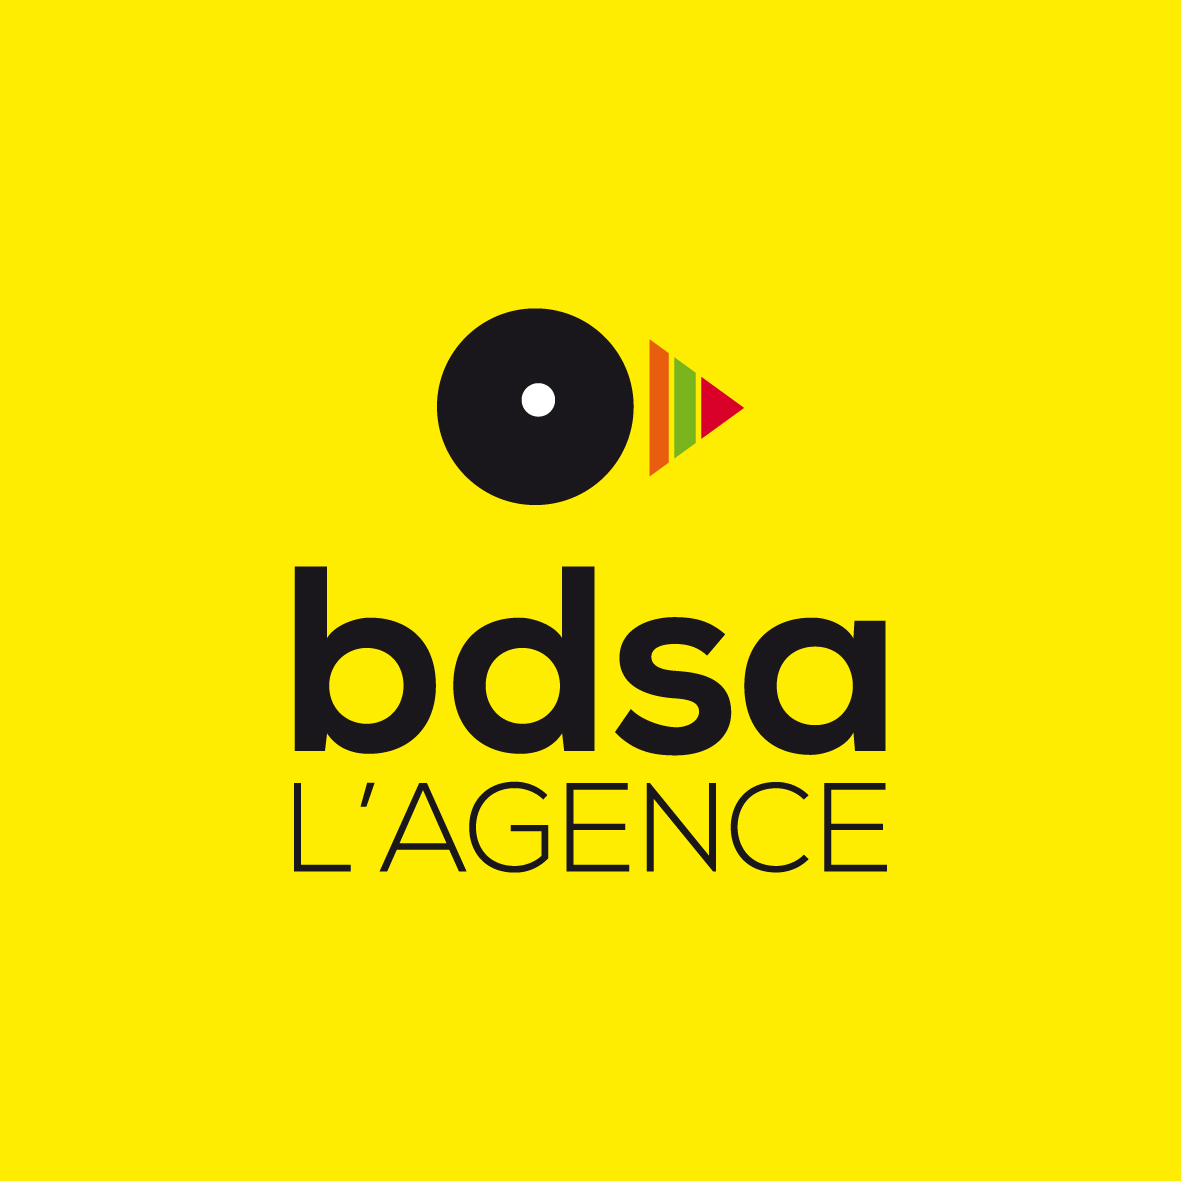 (c) Bdsa-lagence.com